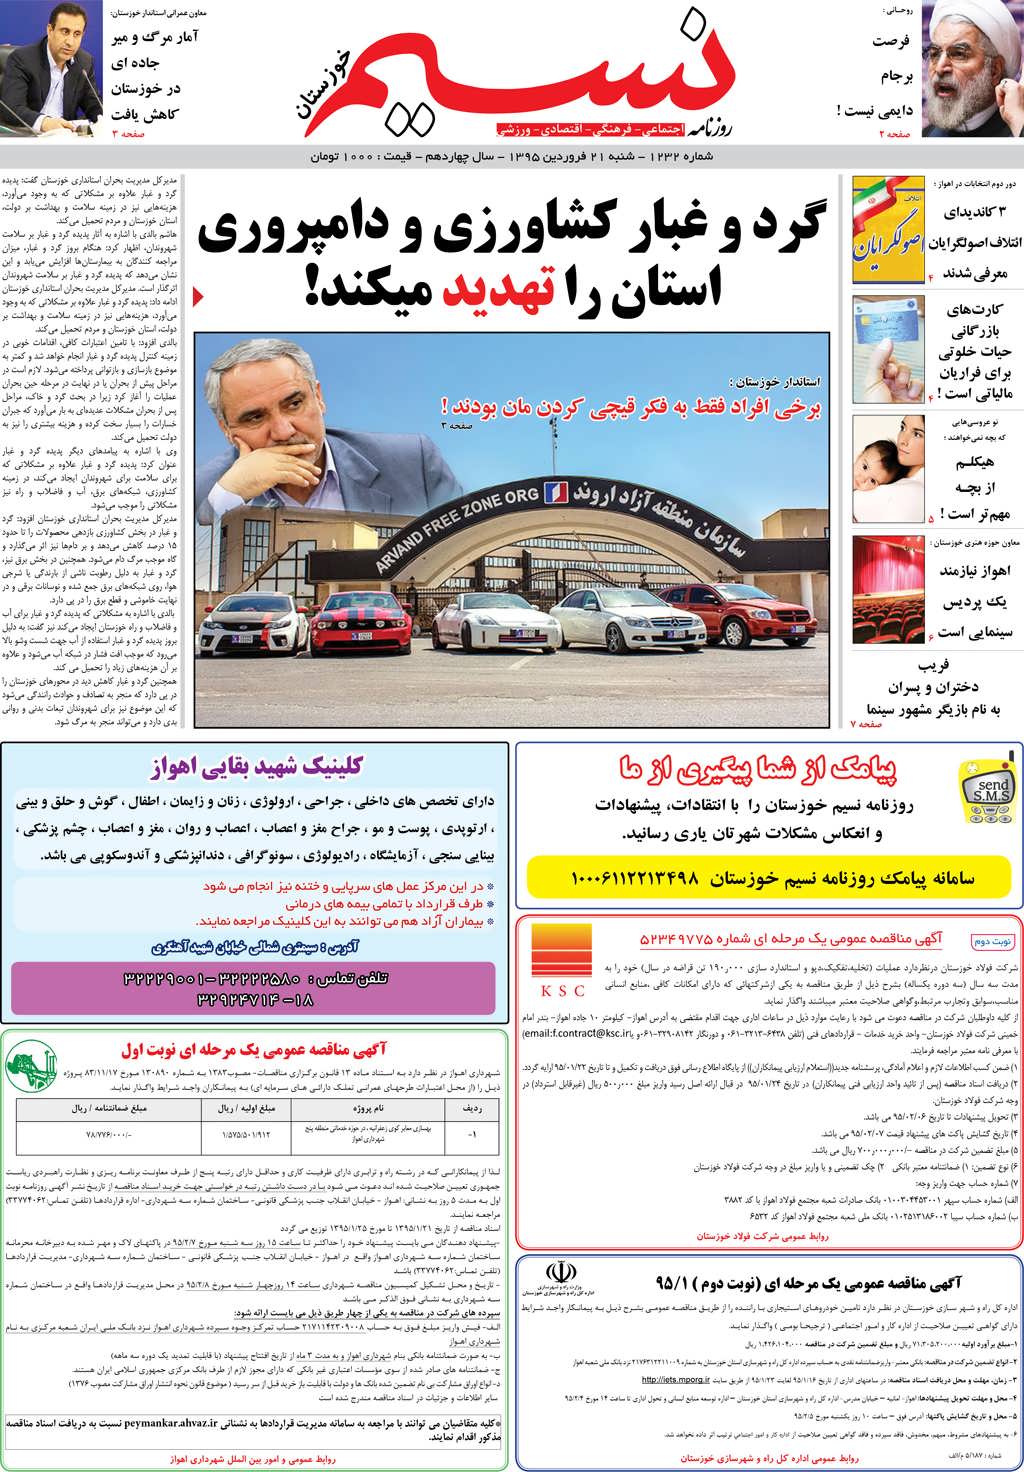 صفحه اصلی روزنامه نسیم شماره 1232